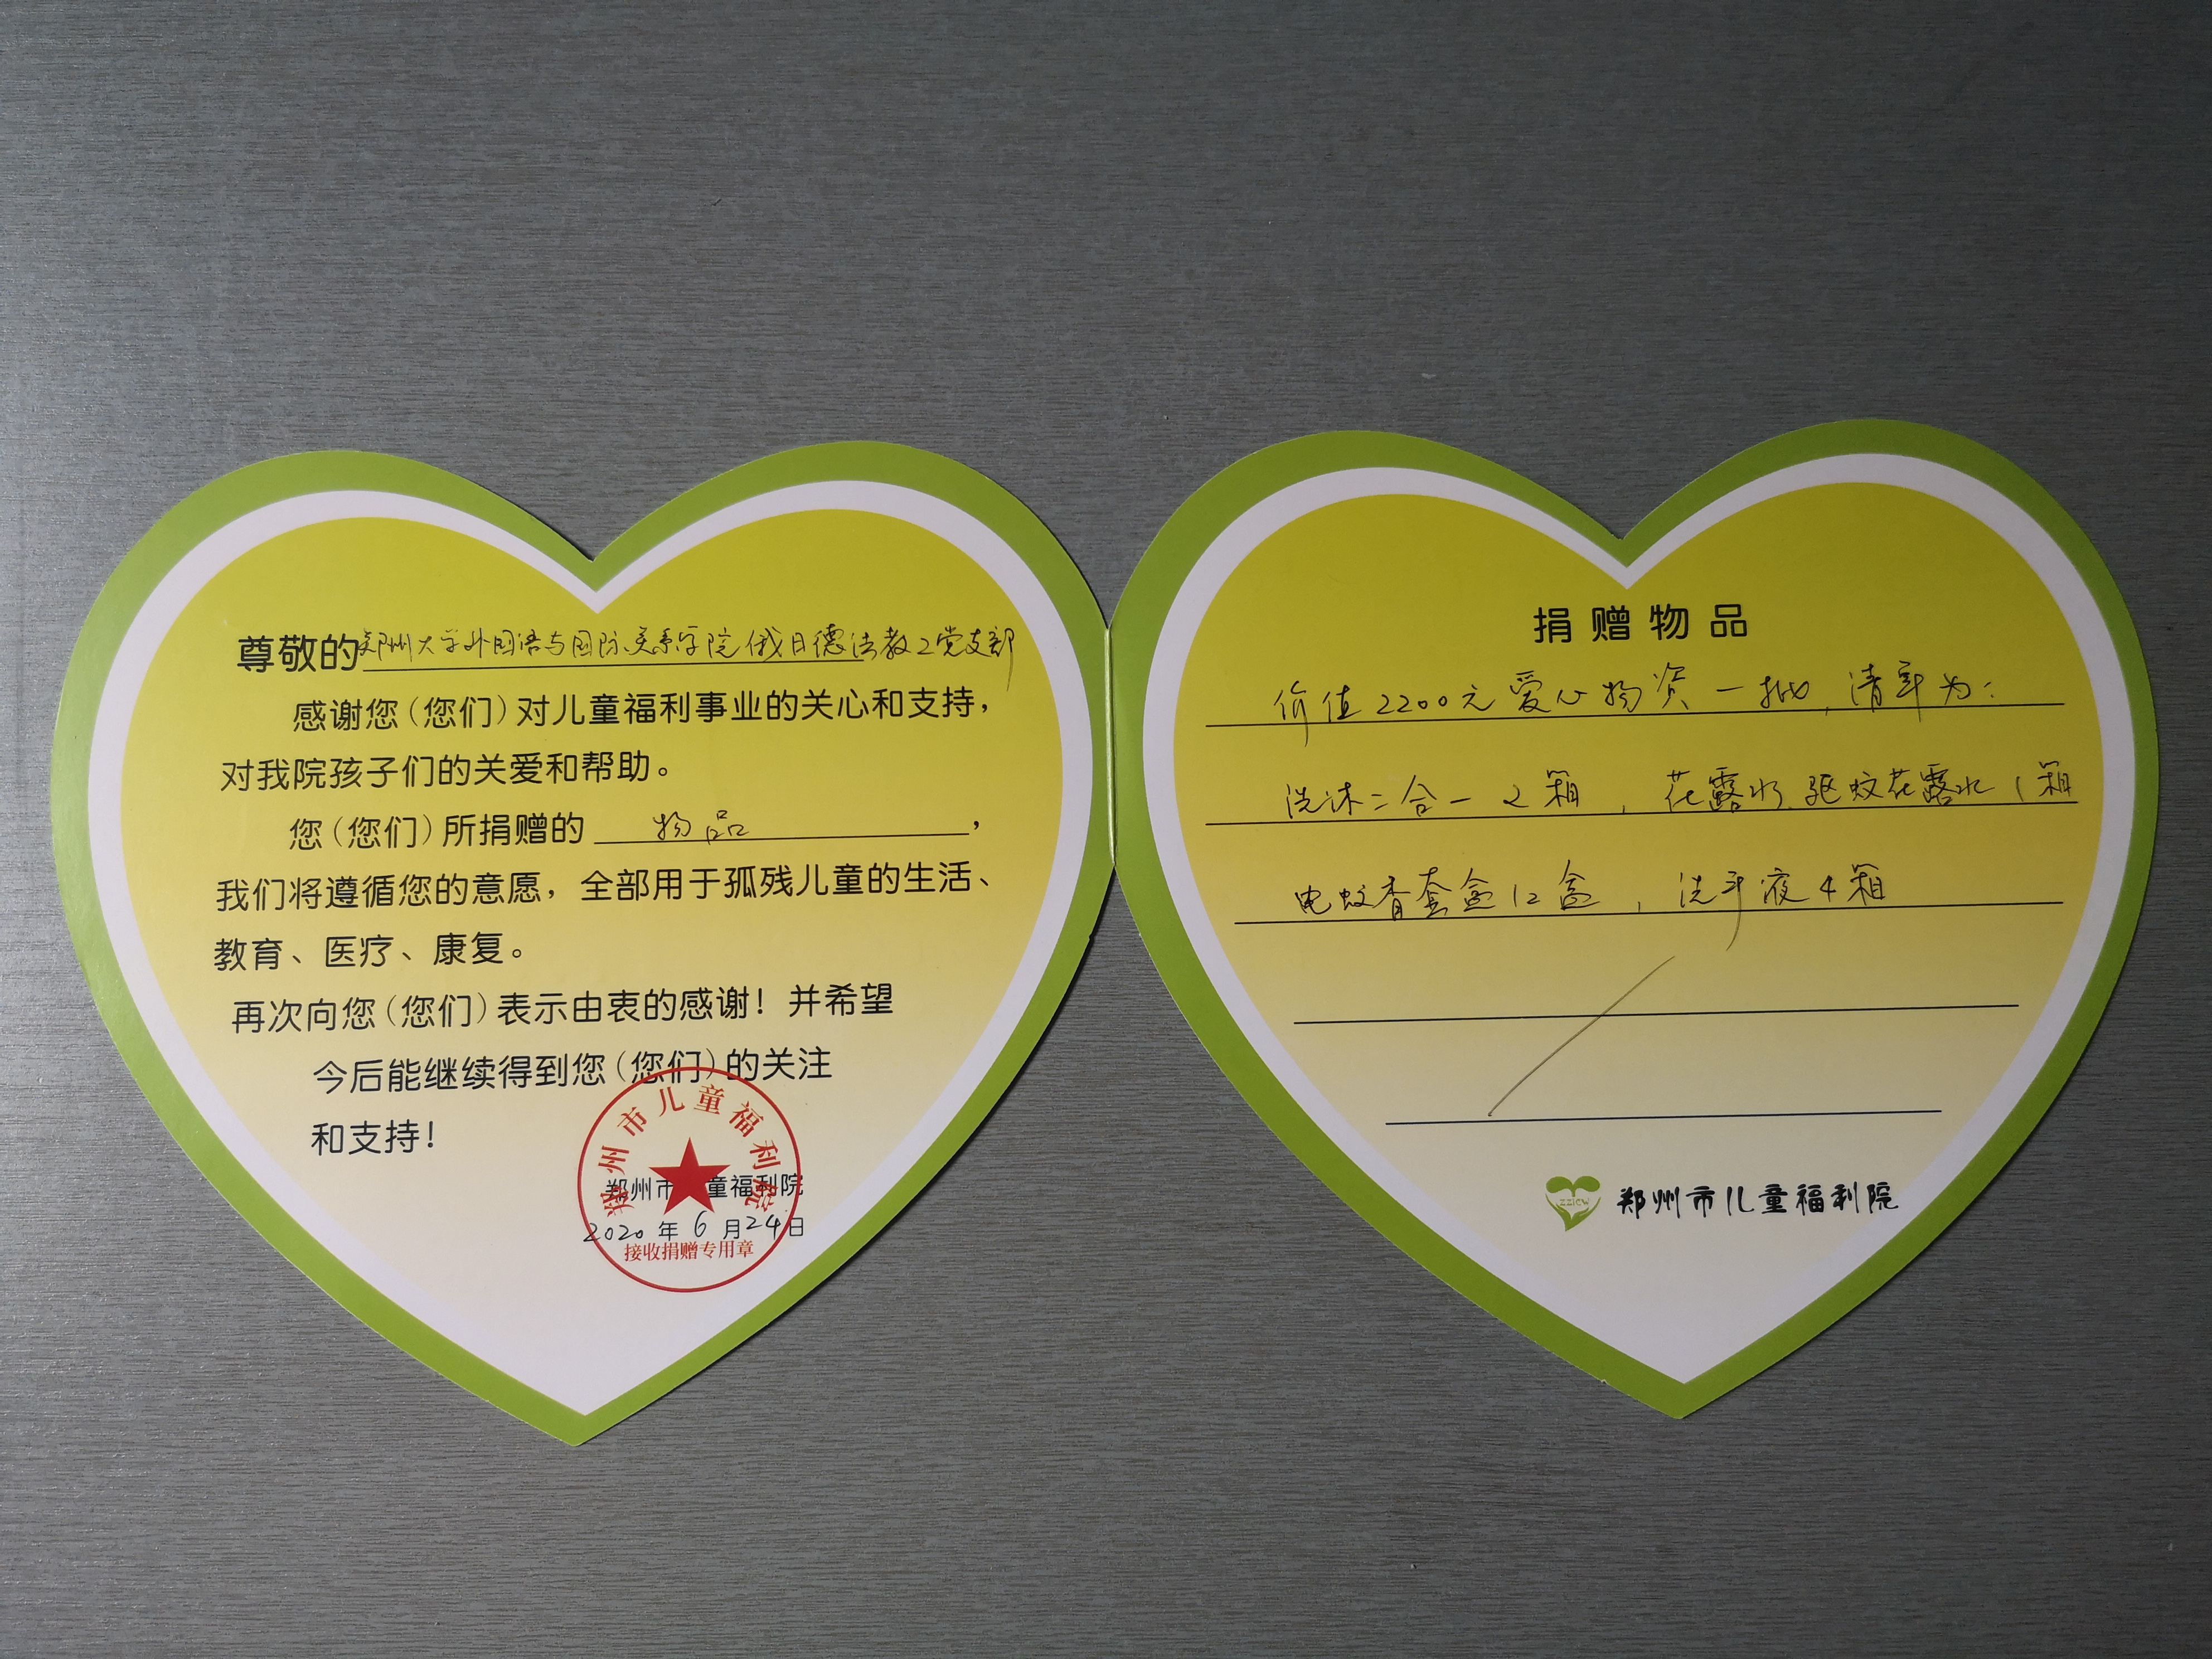 俄日德法支部前往郑州市儿童福利院爱心捐赠